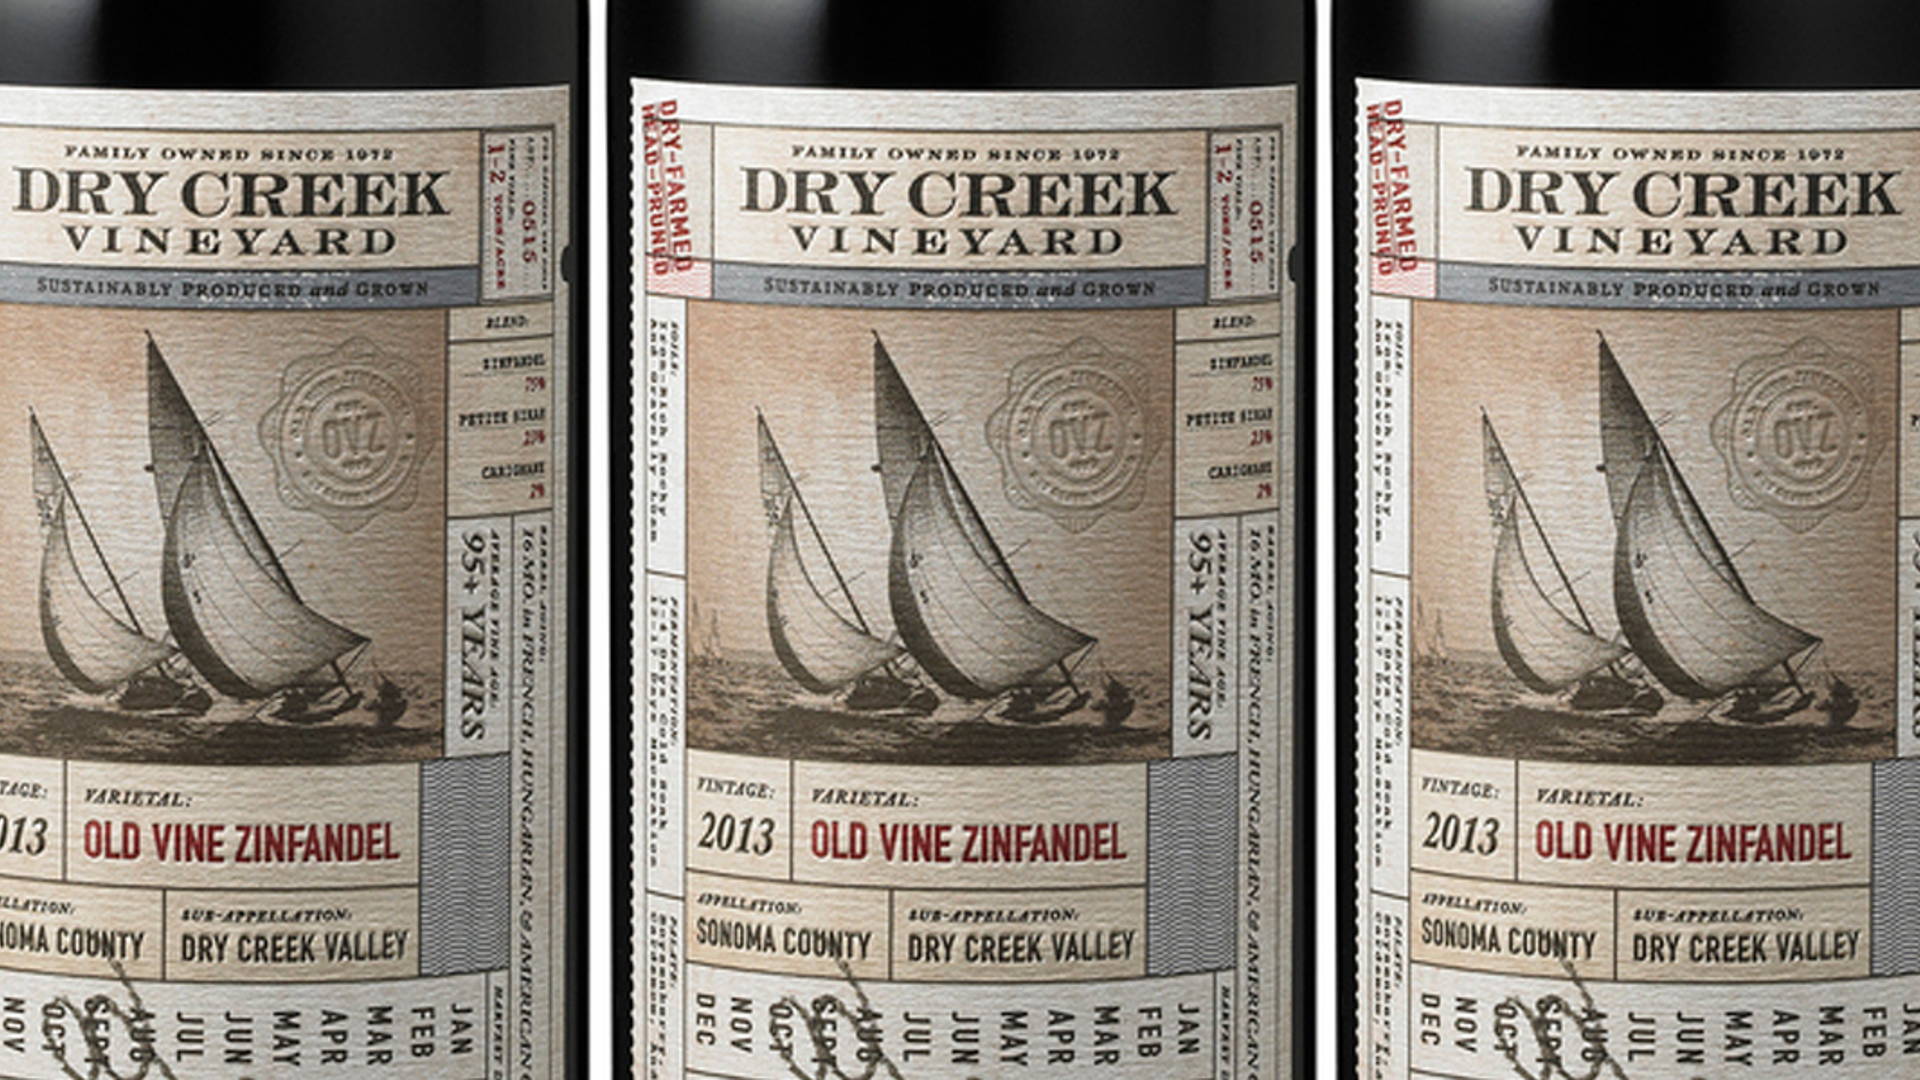 Featured image for Dry Creek Vineyard Old Vine Zinfandel